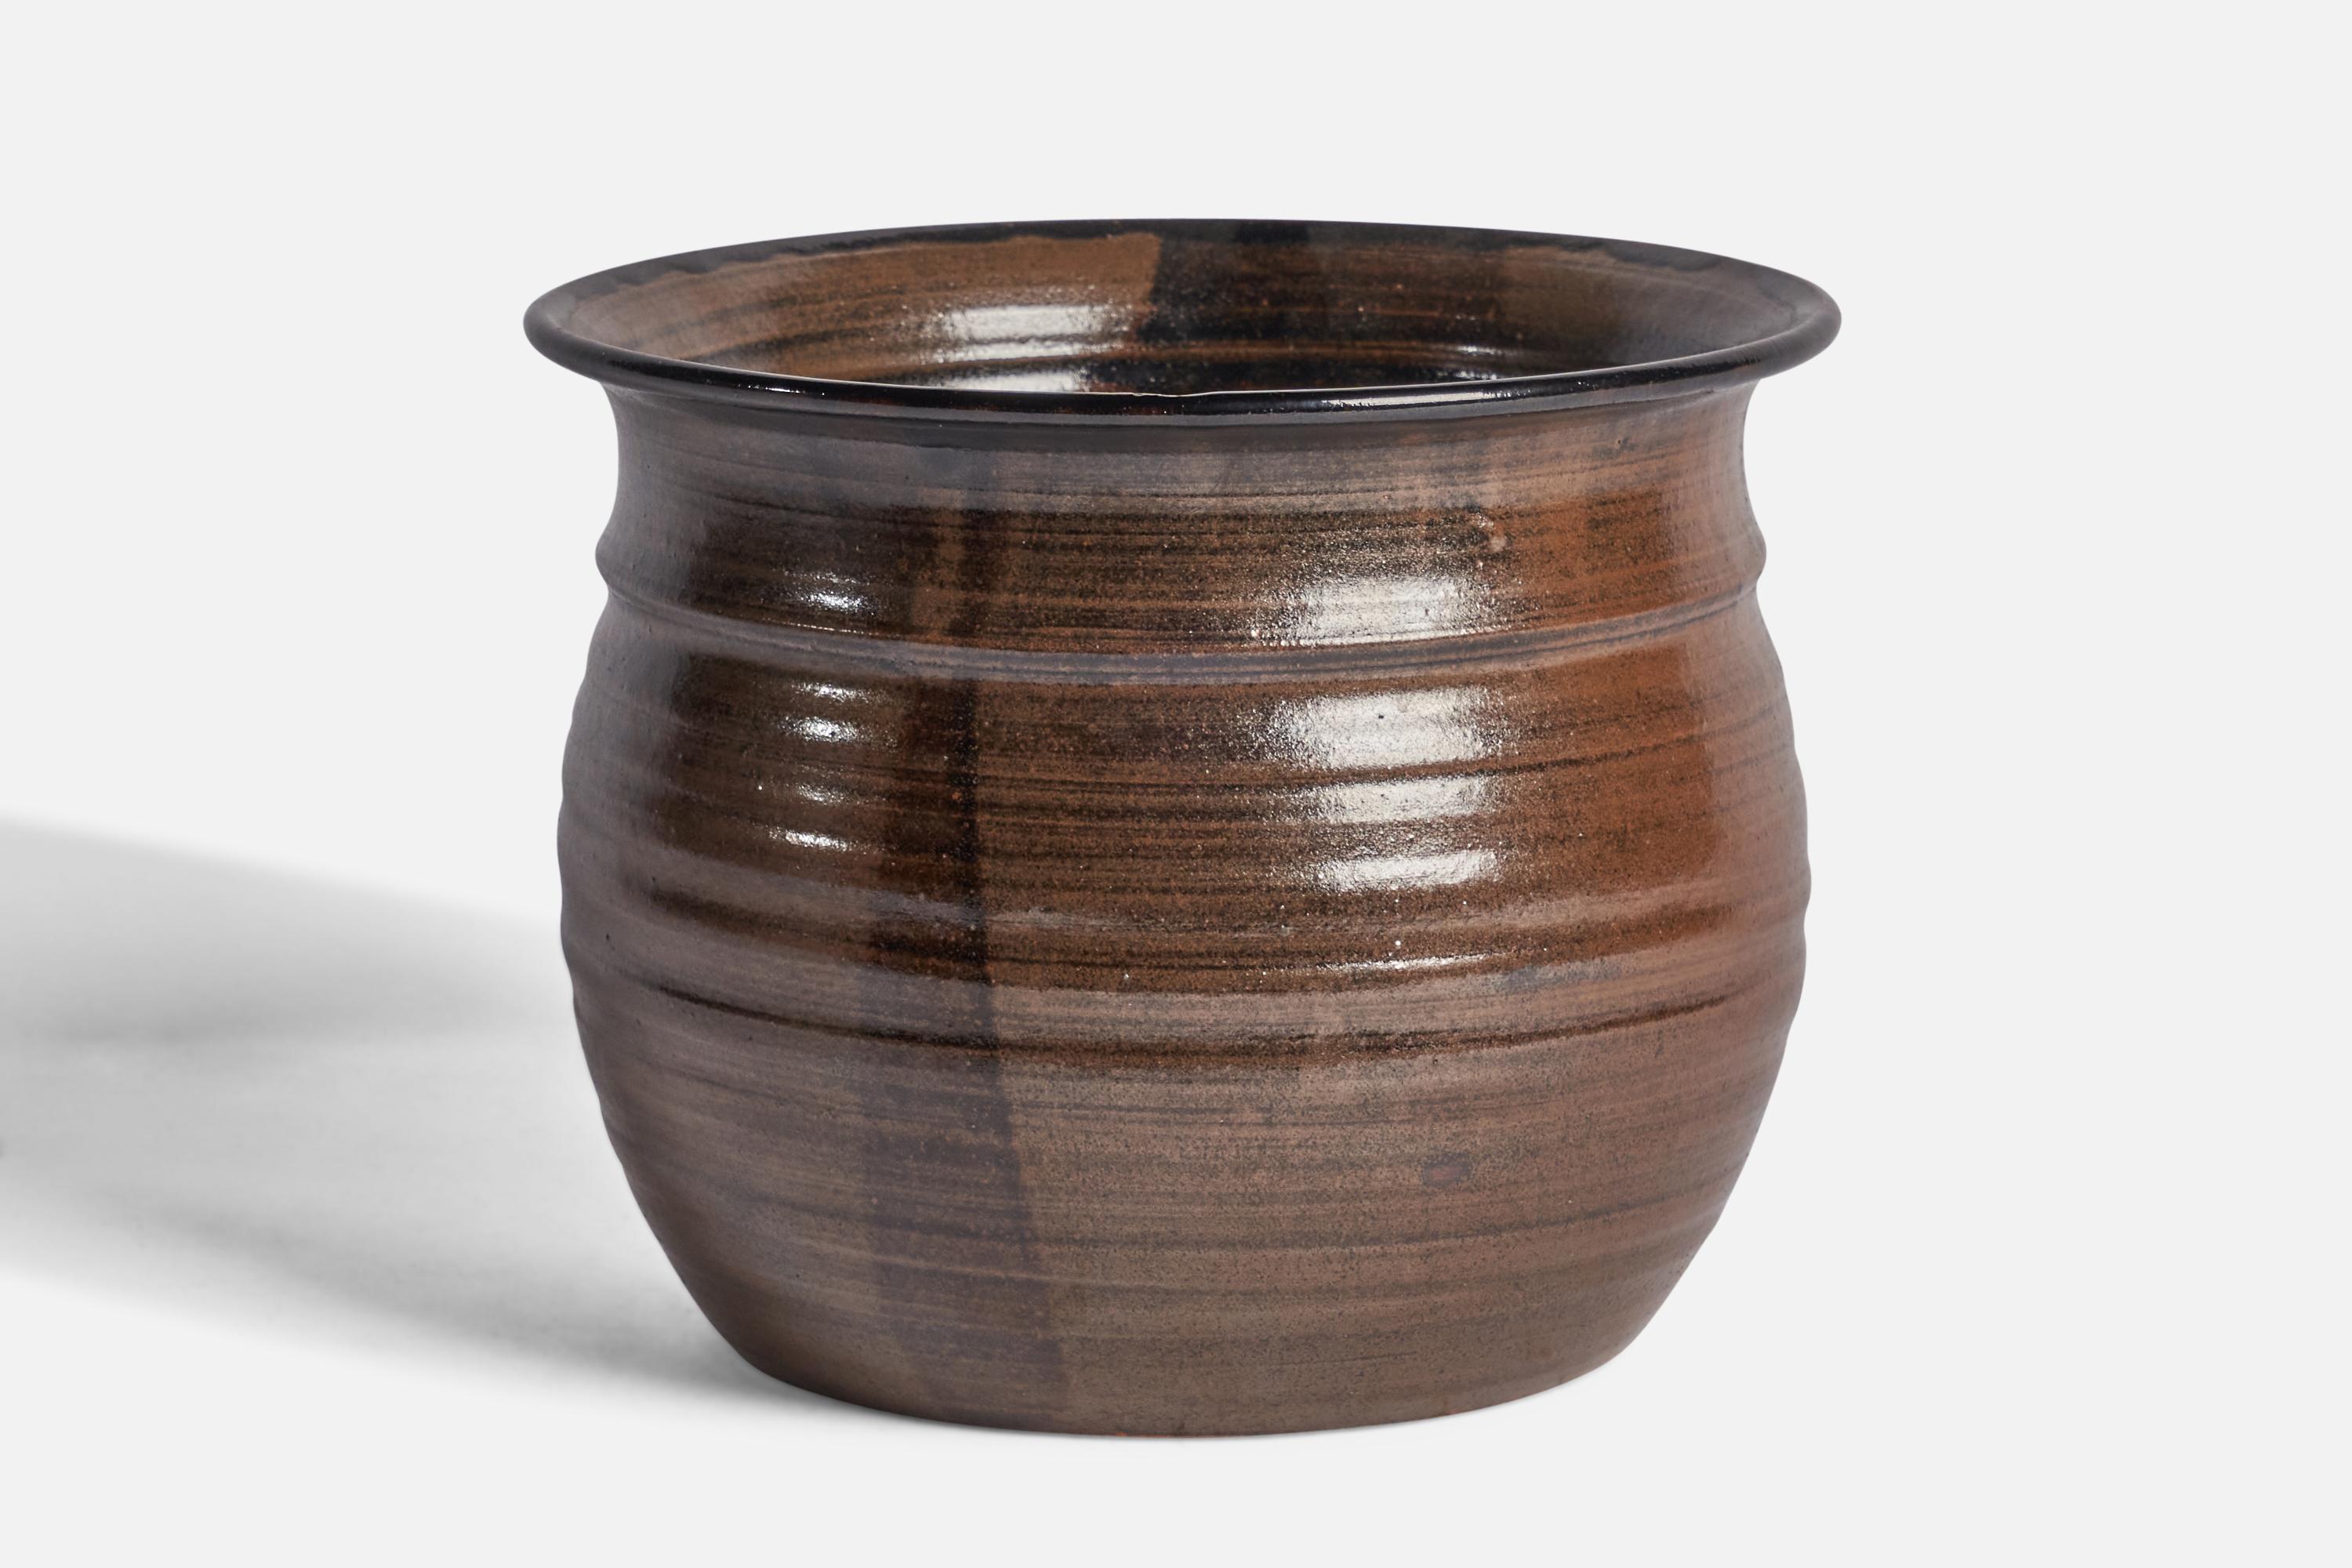 Vase en grès émaillé brun conçu et produit par Rolf Palm, Mölle, Suède, années 1970.